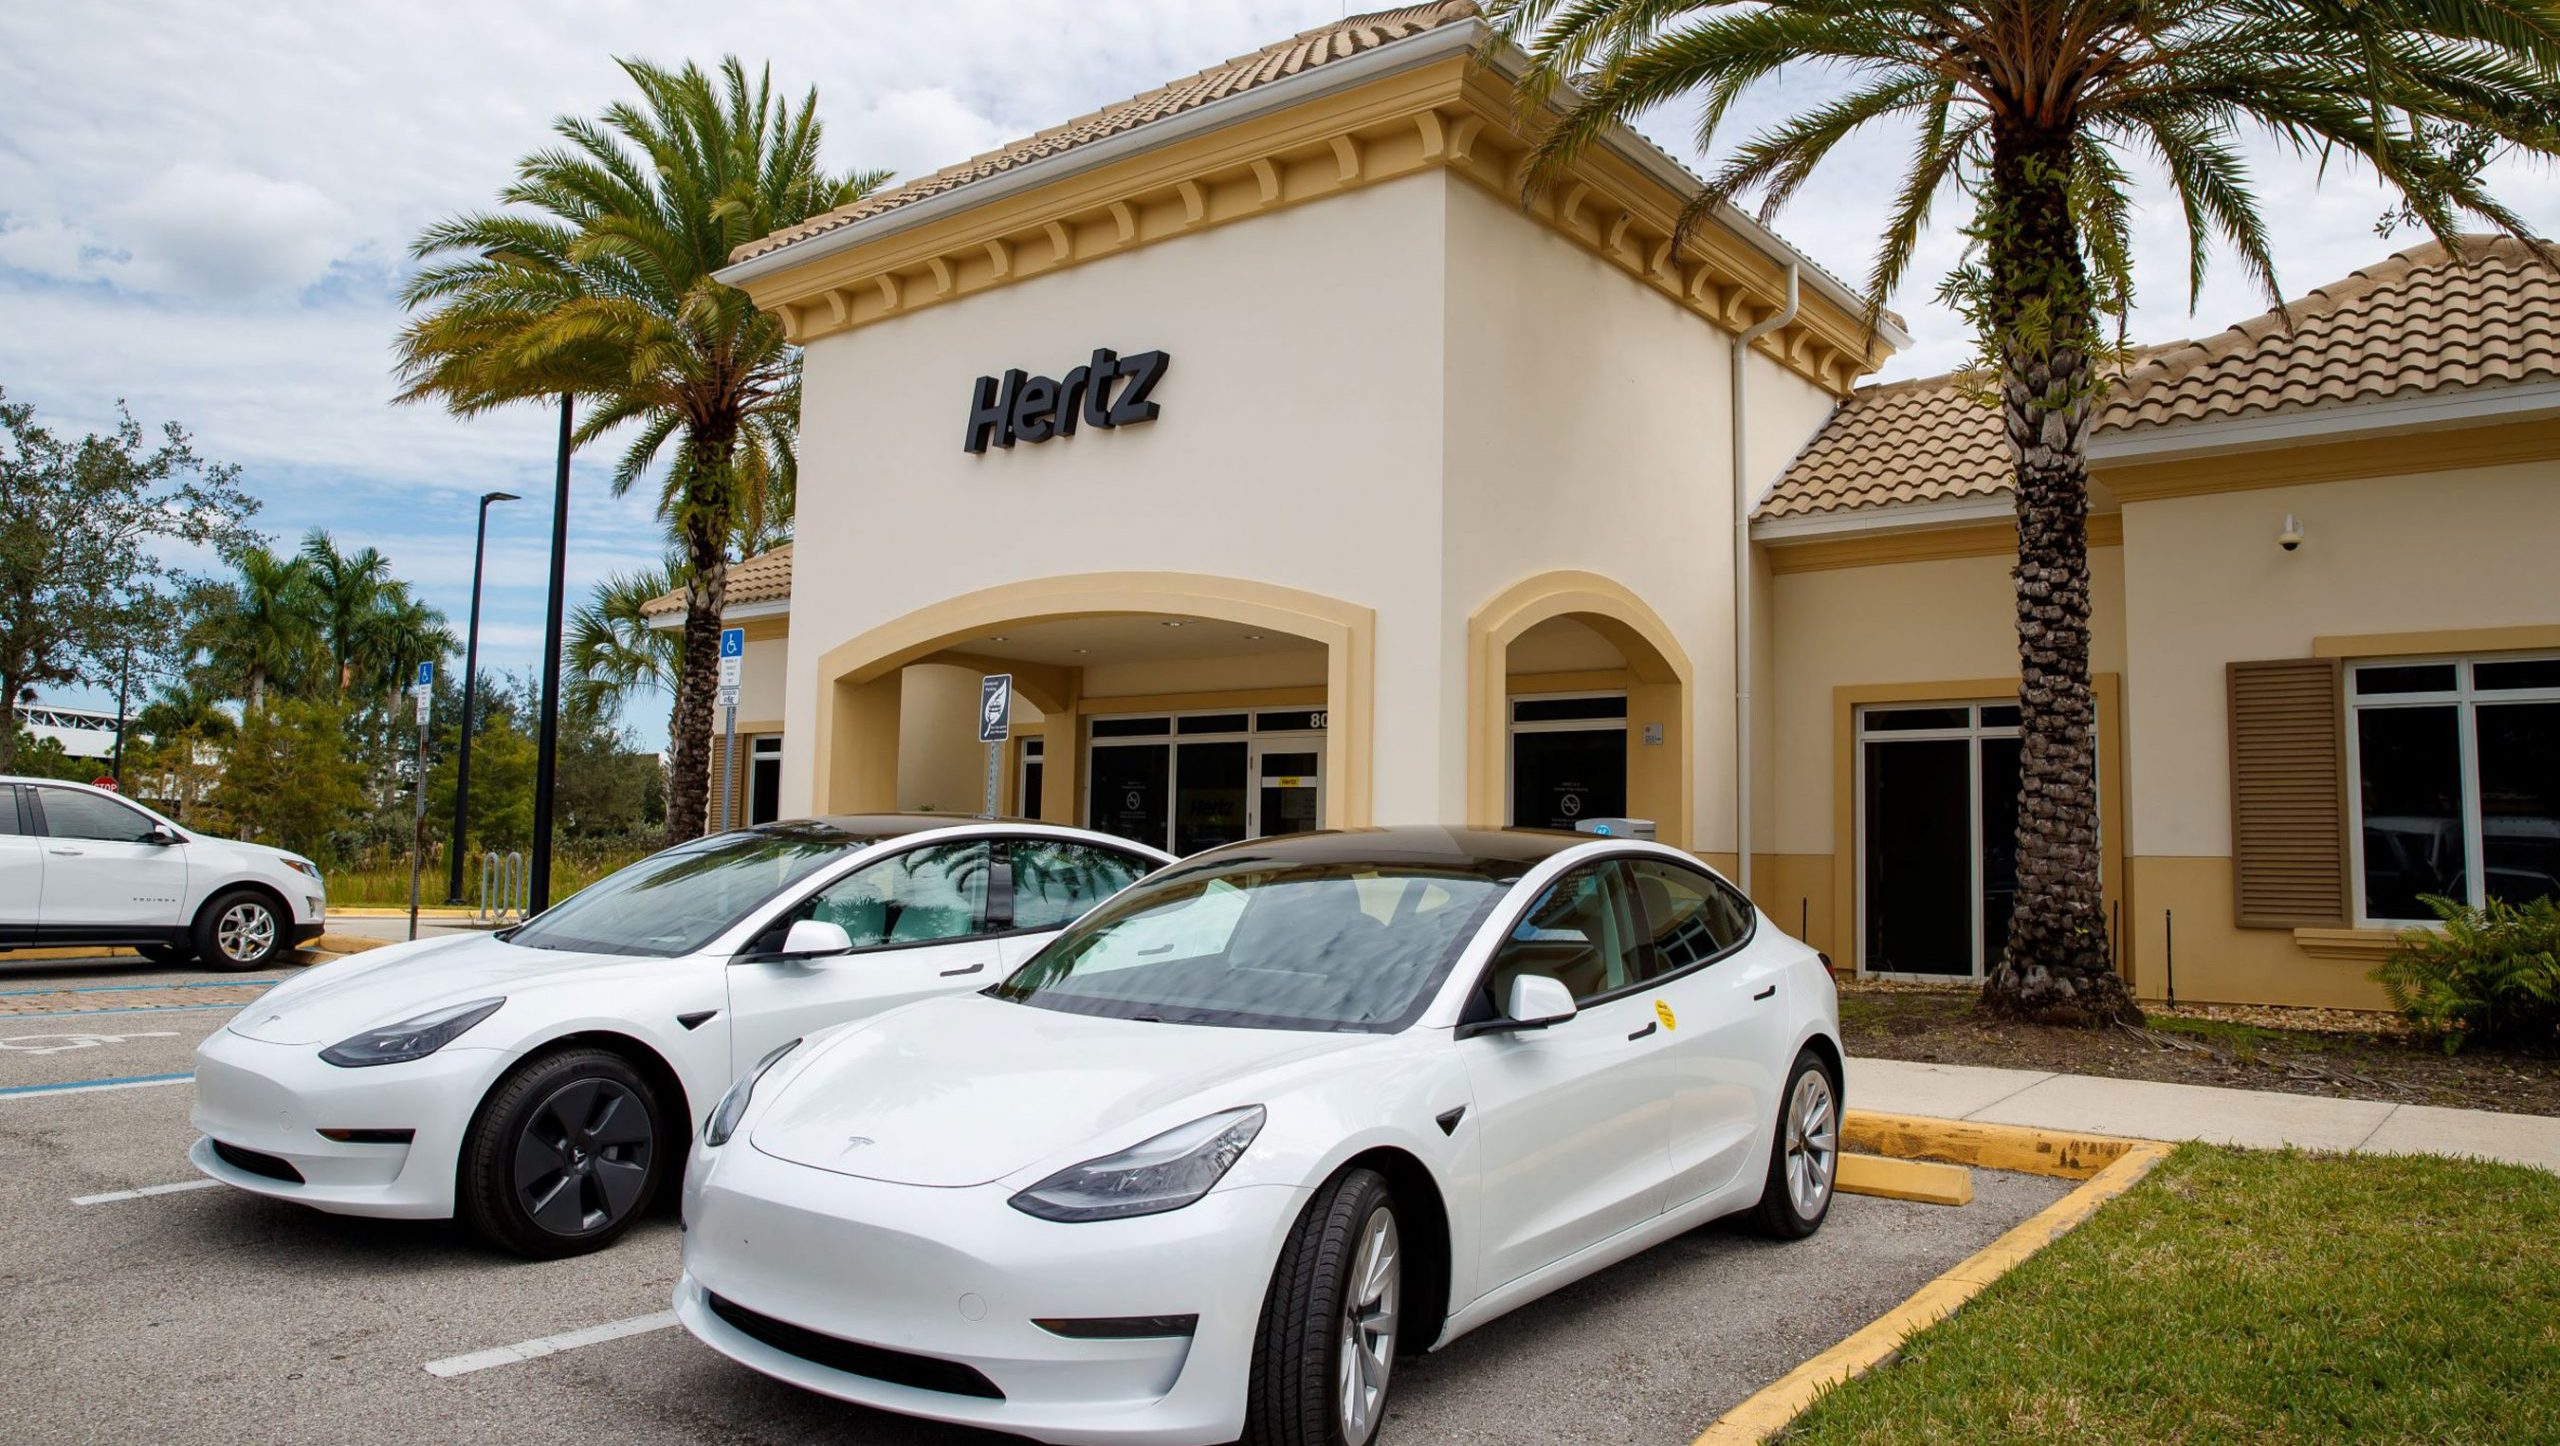 Araç kiralama şirketi Hertz, elektrikli araç filosu için 100 bin Tesla siparişi verdi